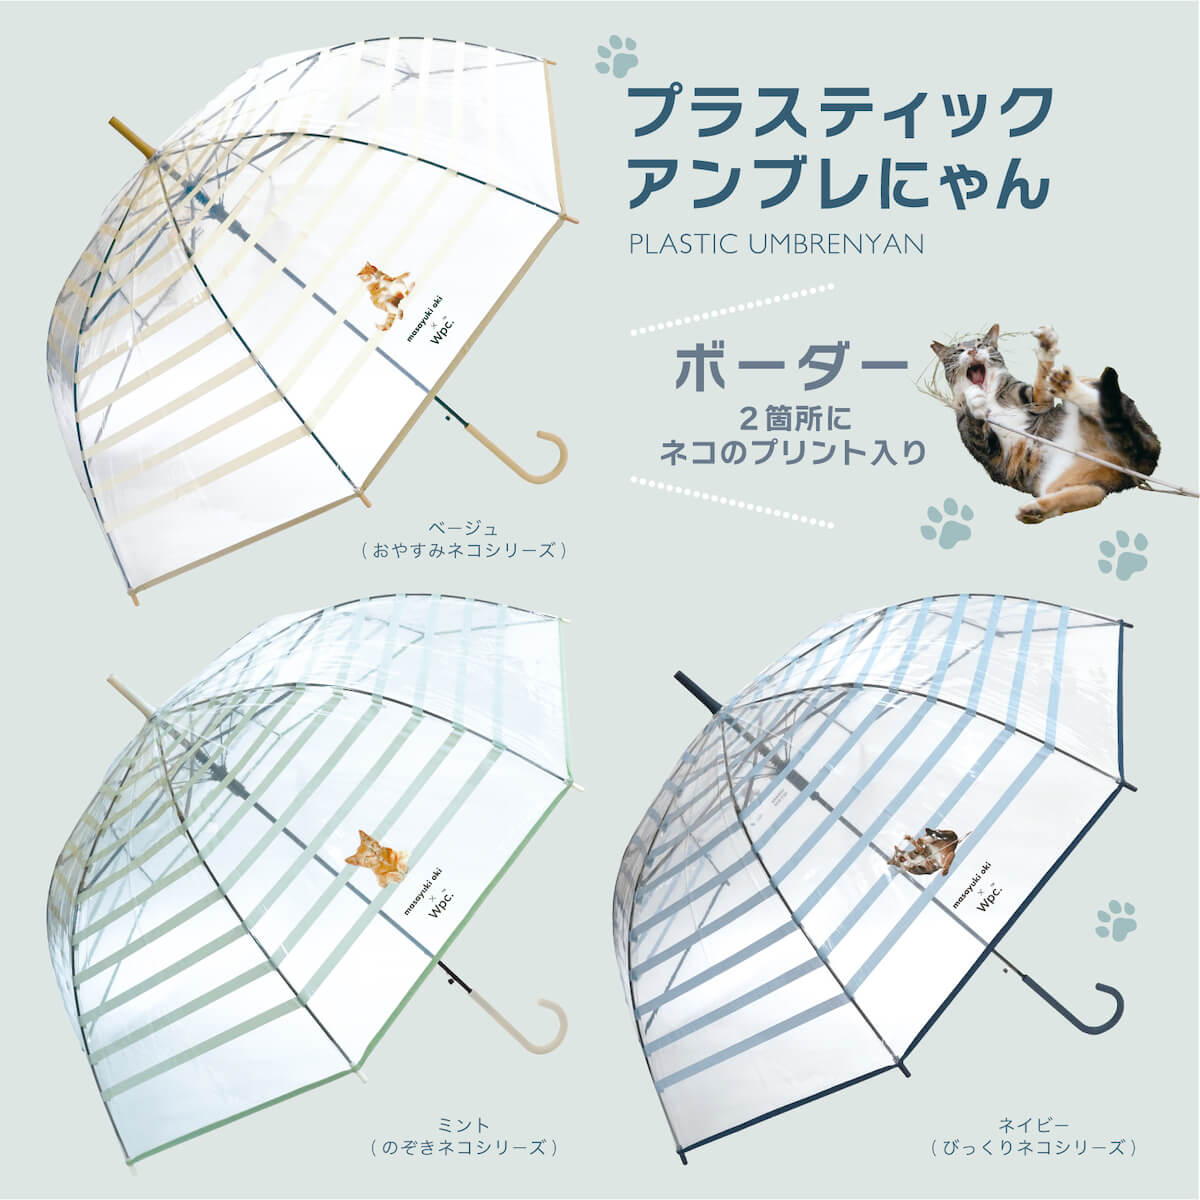 Wpc.と沖昌之さんがコラボした猫デザイン傘「プラスティックアンブレにゃん」ボーダー柄 全3種類